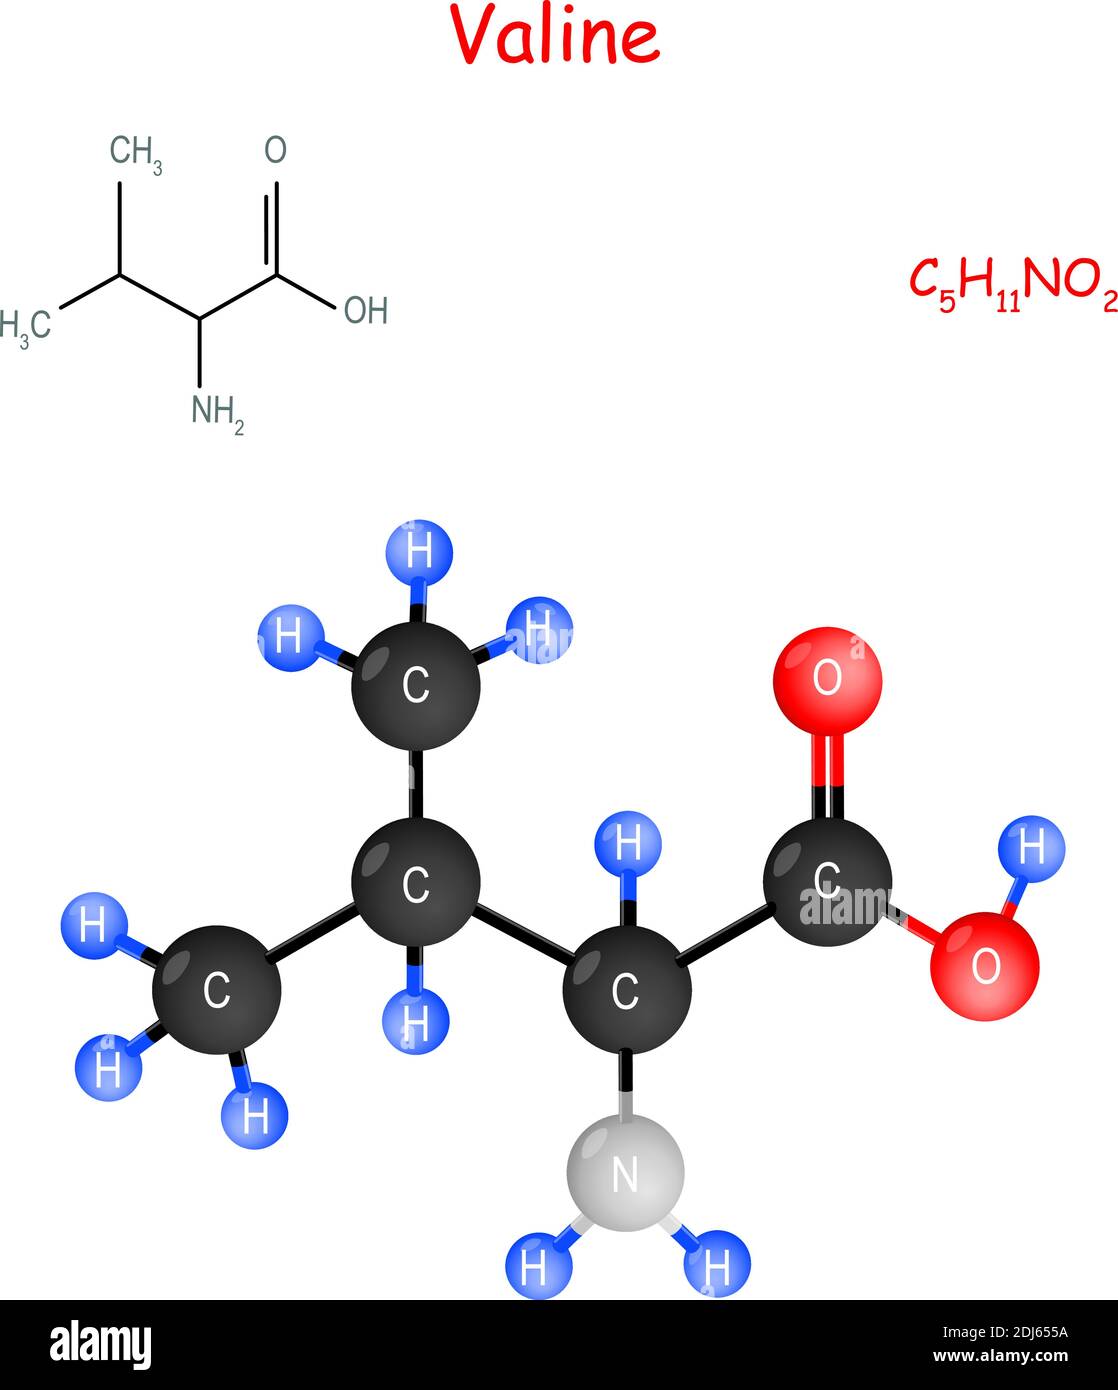 La valine est un acide aminé essentiel. Formule structurale chimique et  modèle de molécule. C5H11NO2. Illustration vectorielle à usage éducatif et  médical Image Vectorielle Stock - Alamy